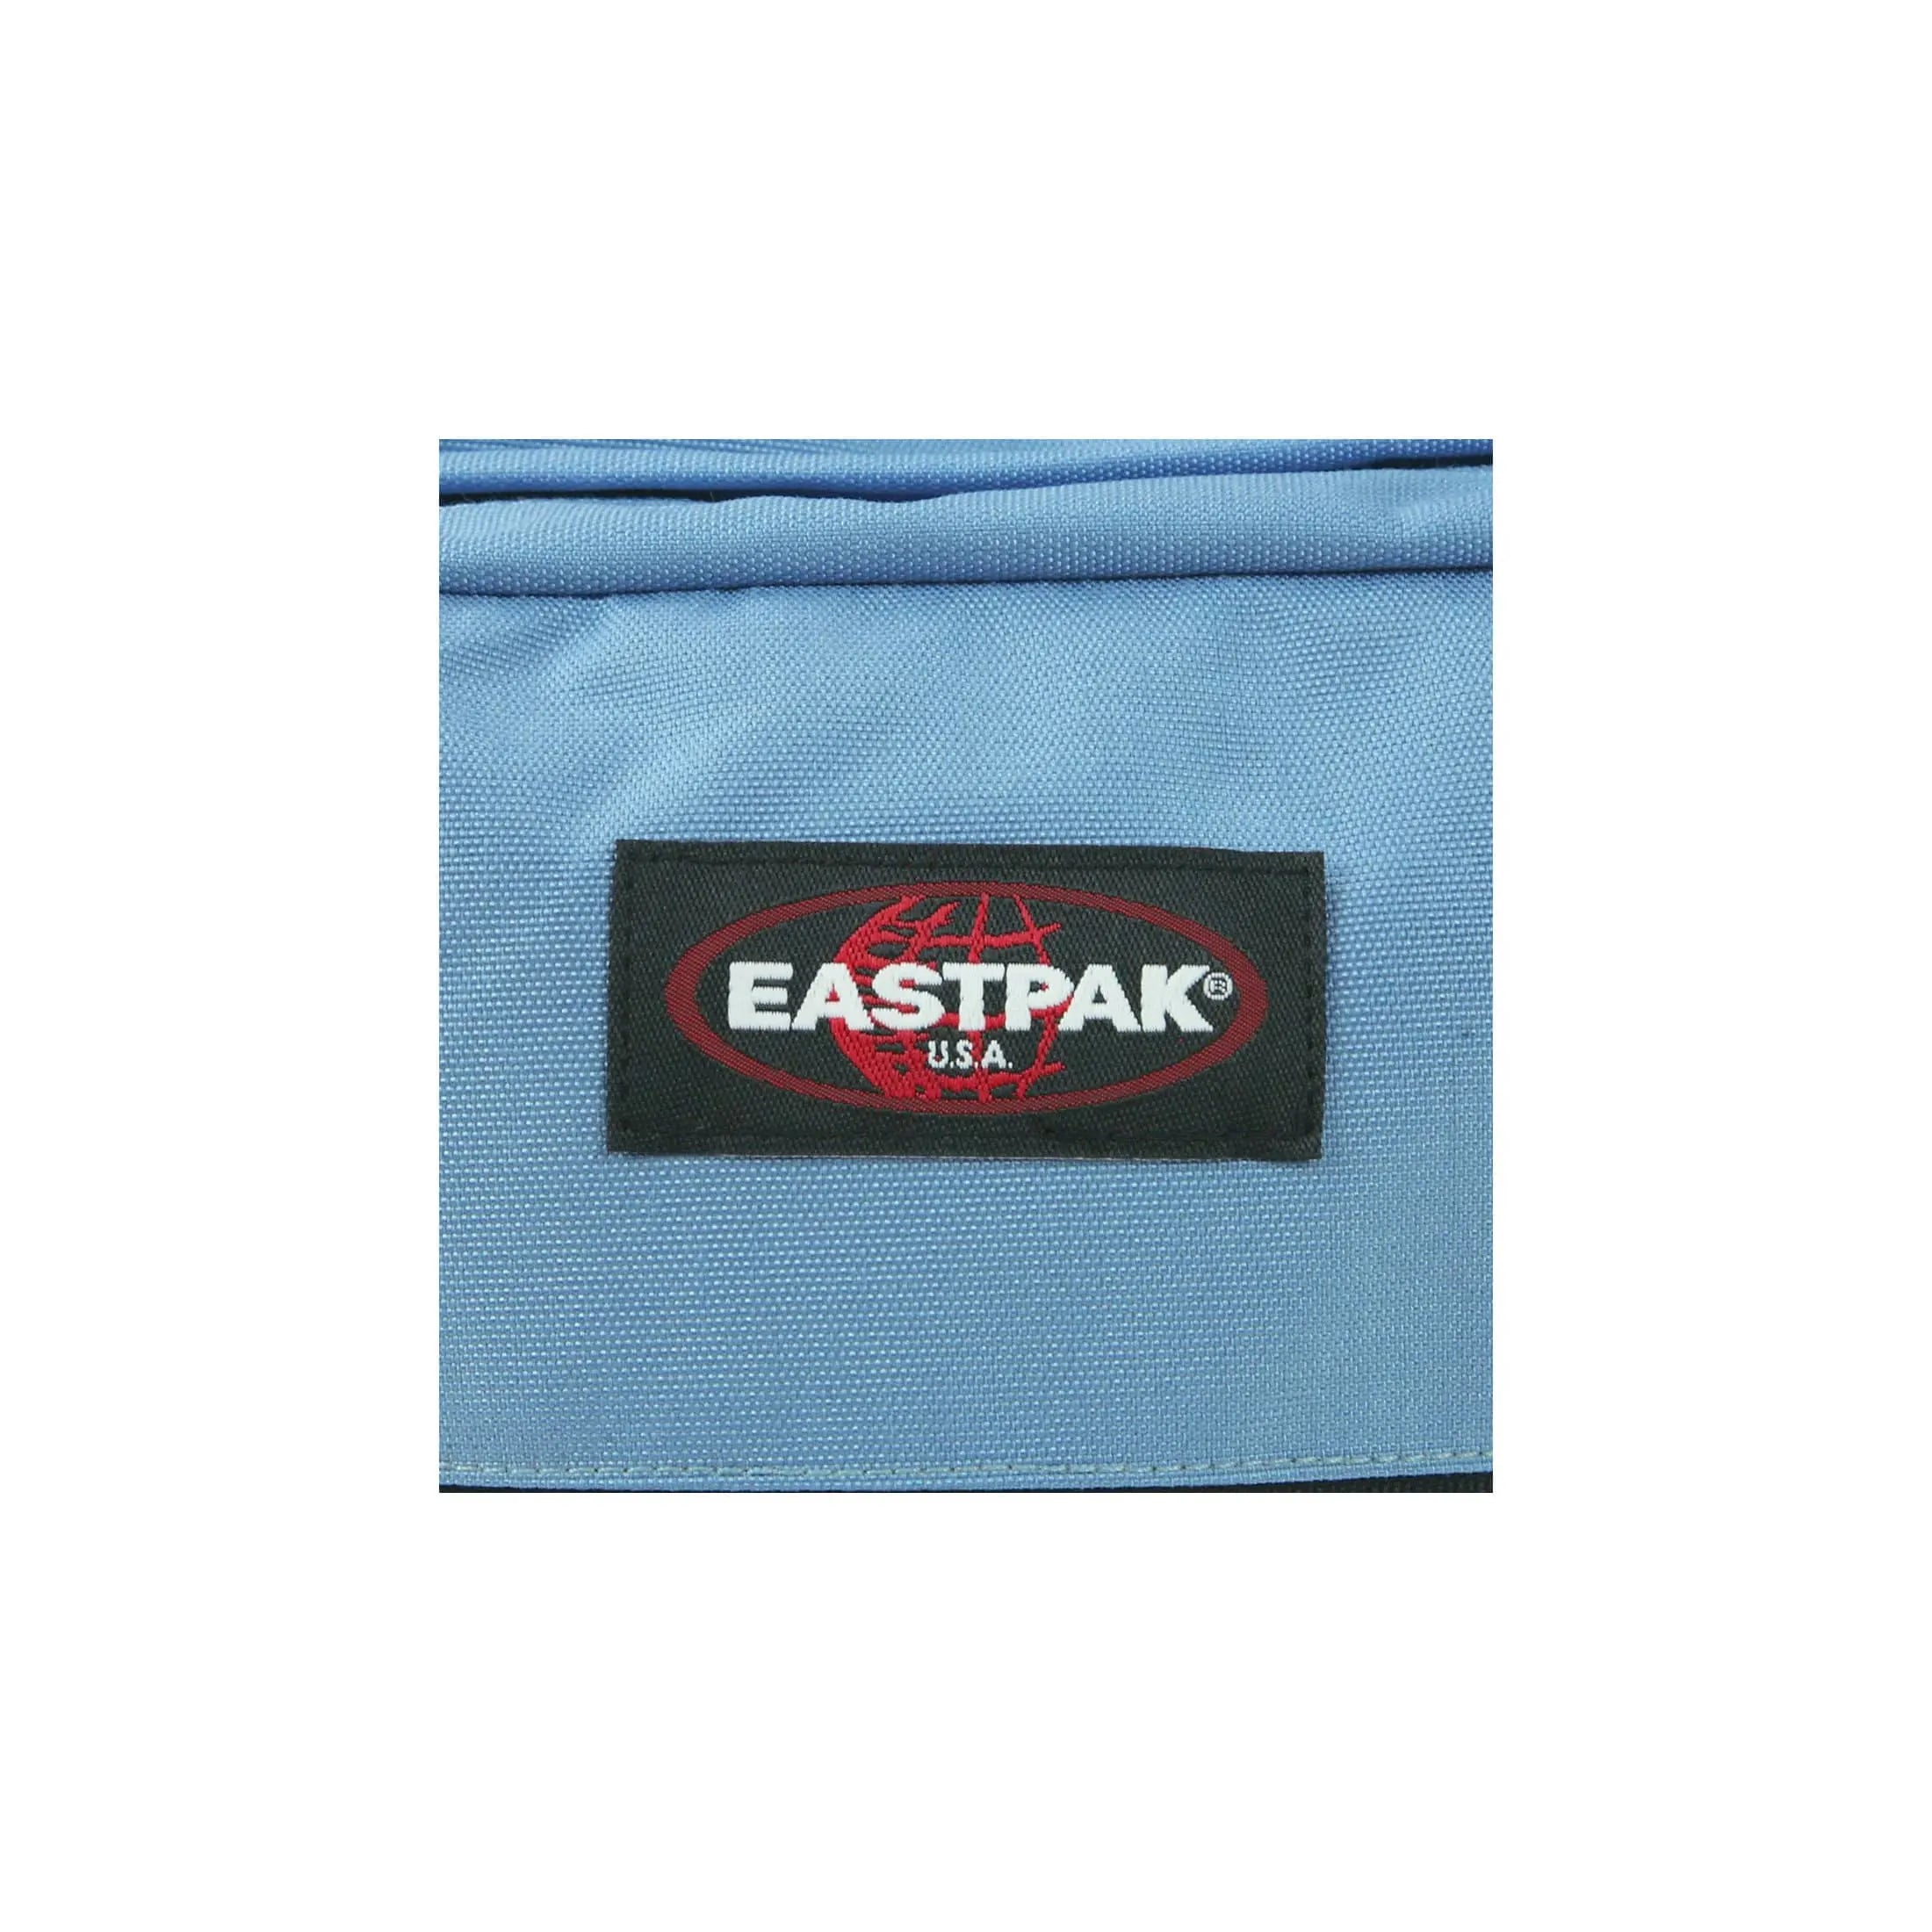 Eastpak Authentic Pinnacle Freizeitrucksack 42 cm - Ultra Marine